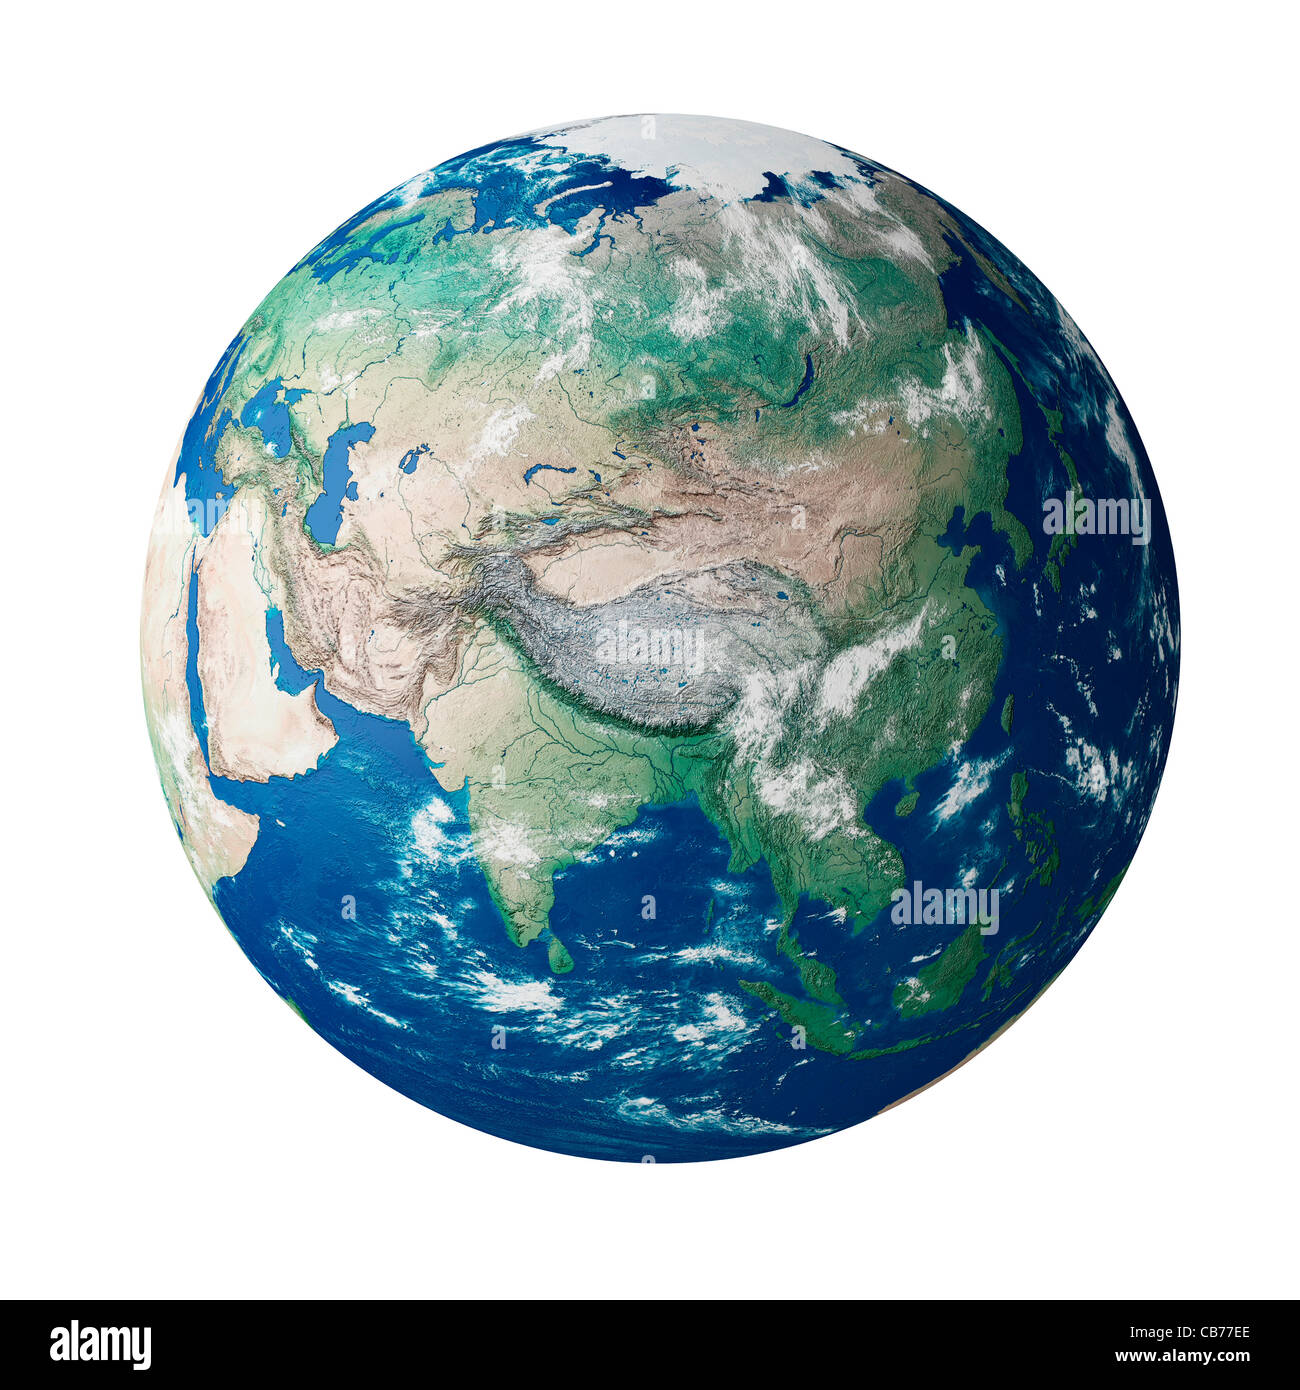 Globe montrant le continent de l'Asie sur la planète terre Banque D'Images